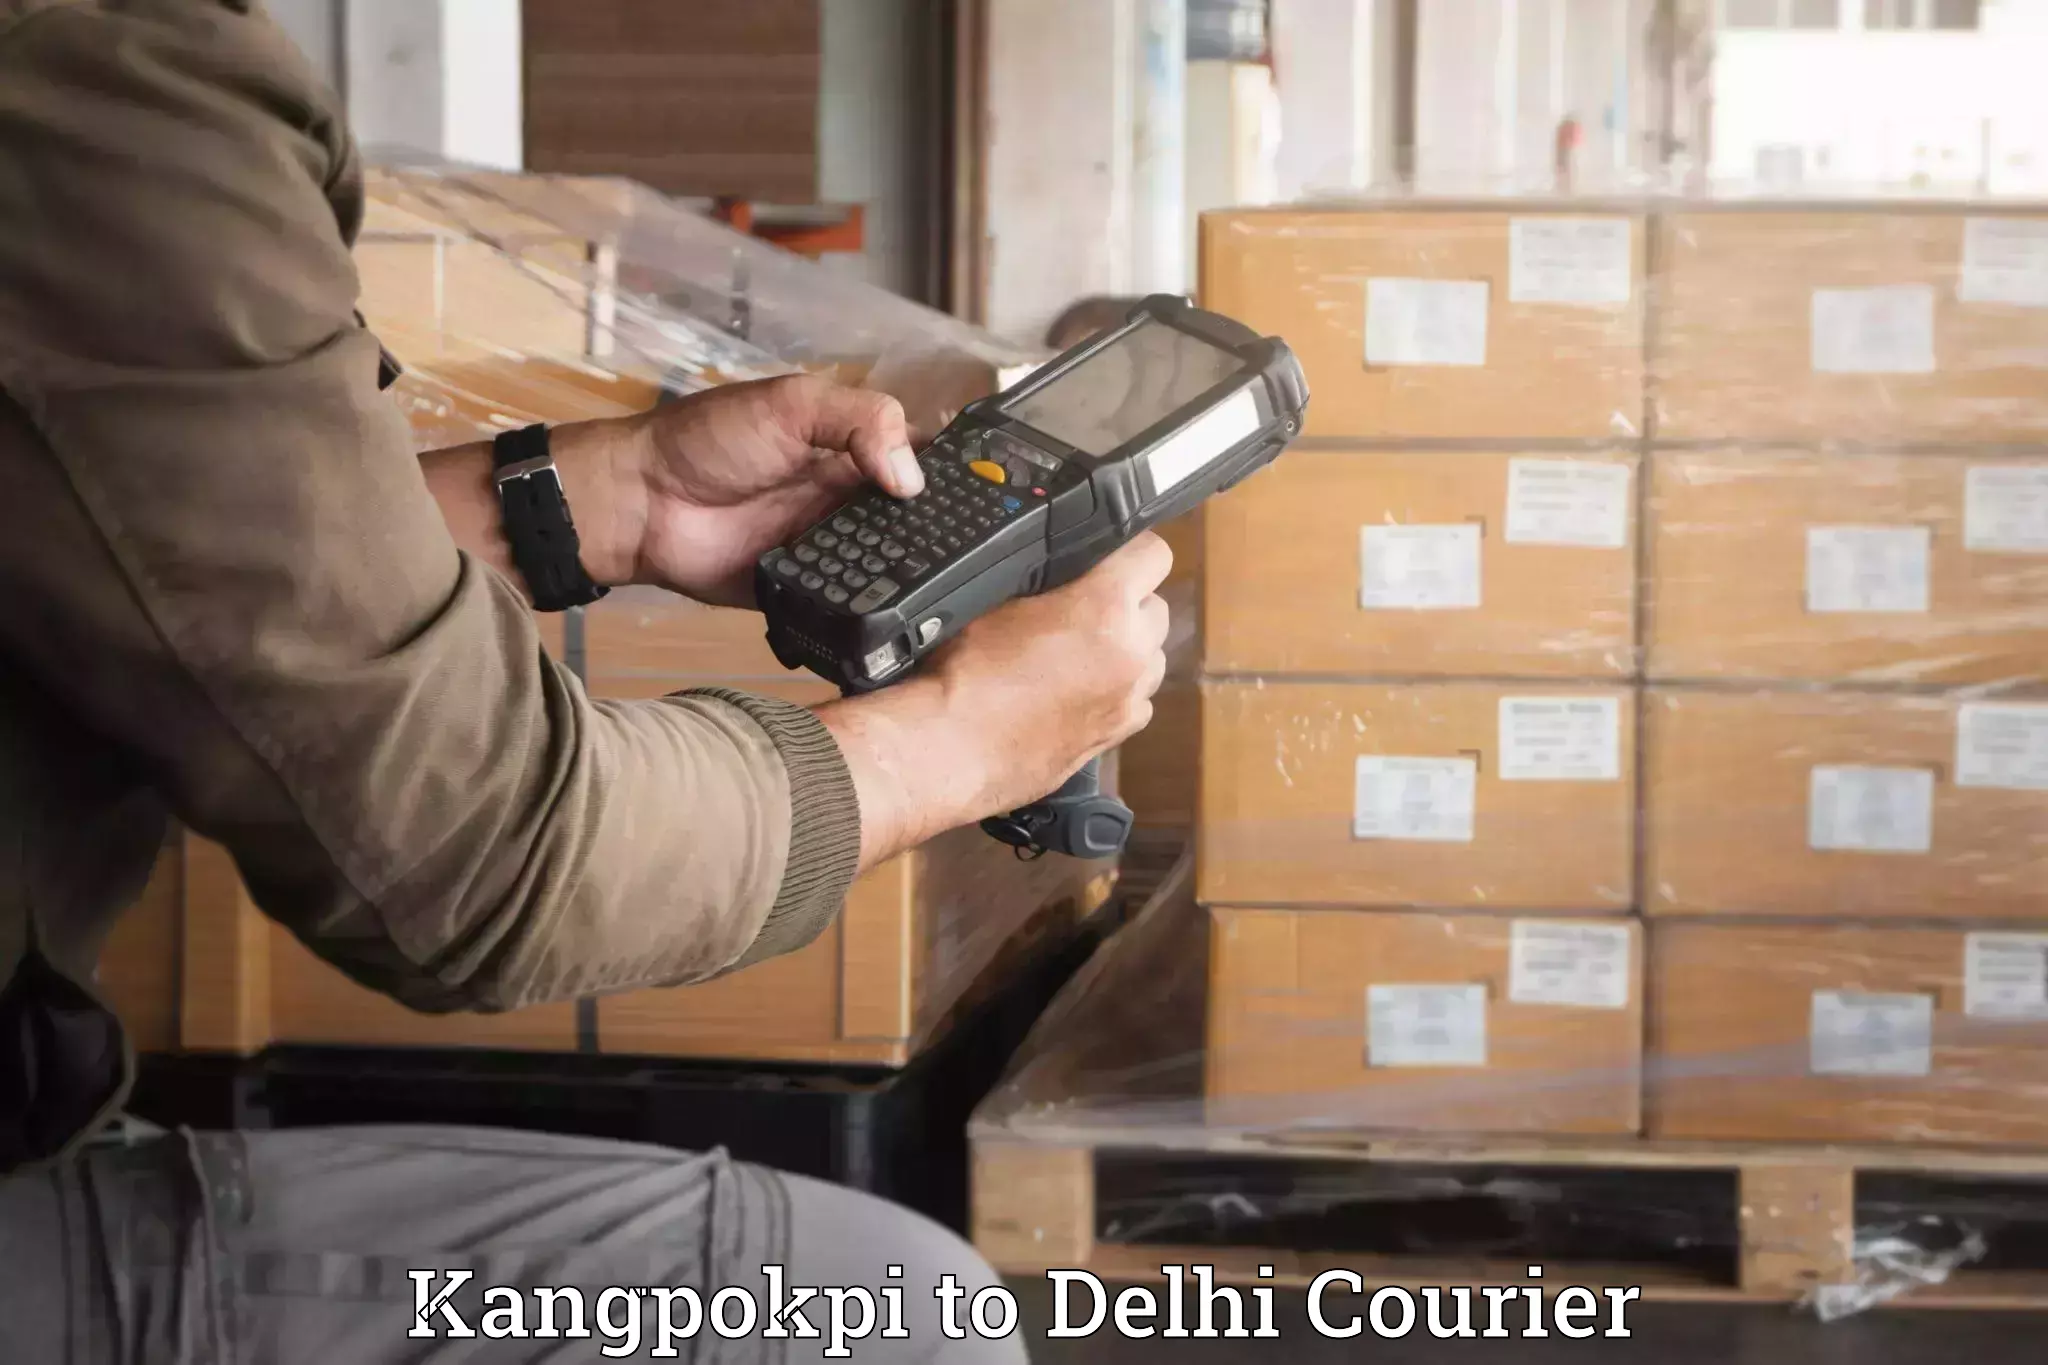 Luggage shipment specialists Kangpokpi to Sansad Marg